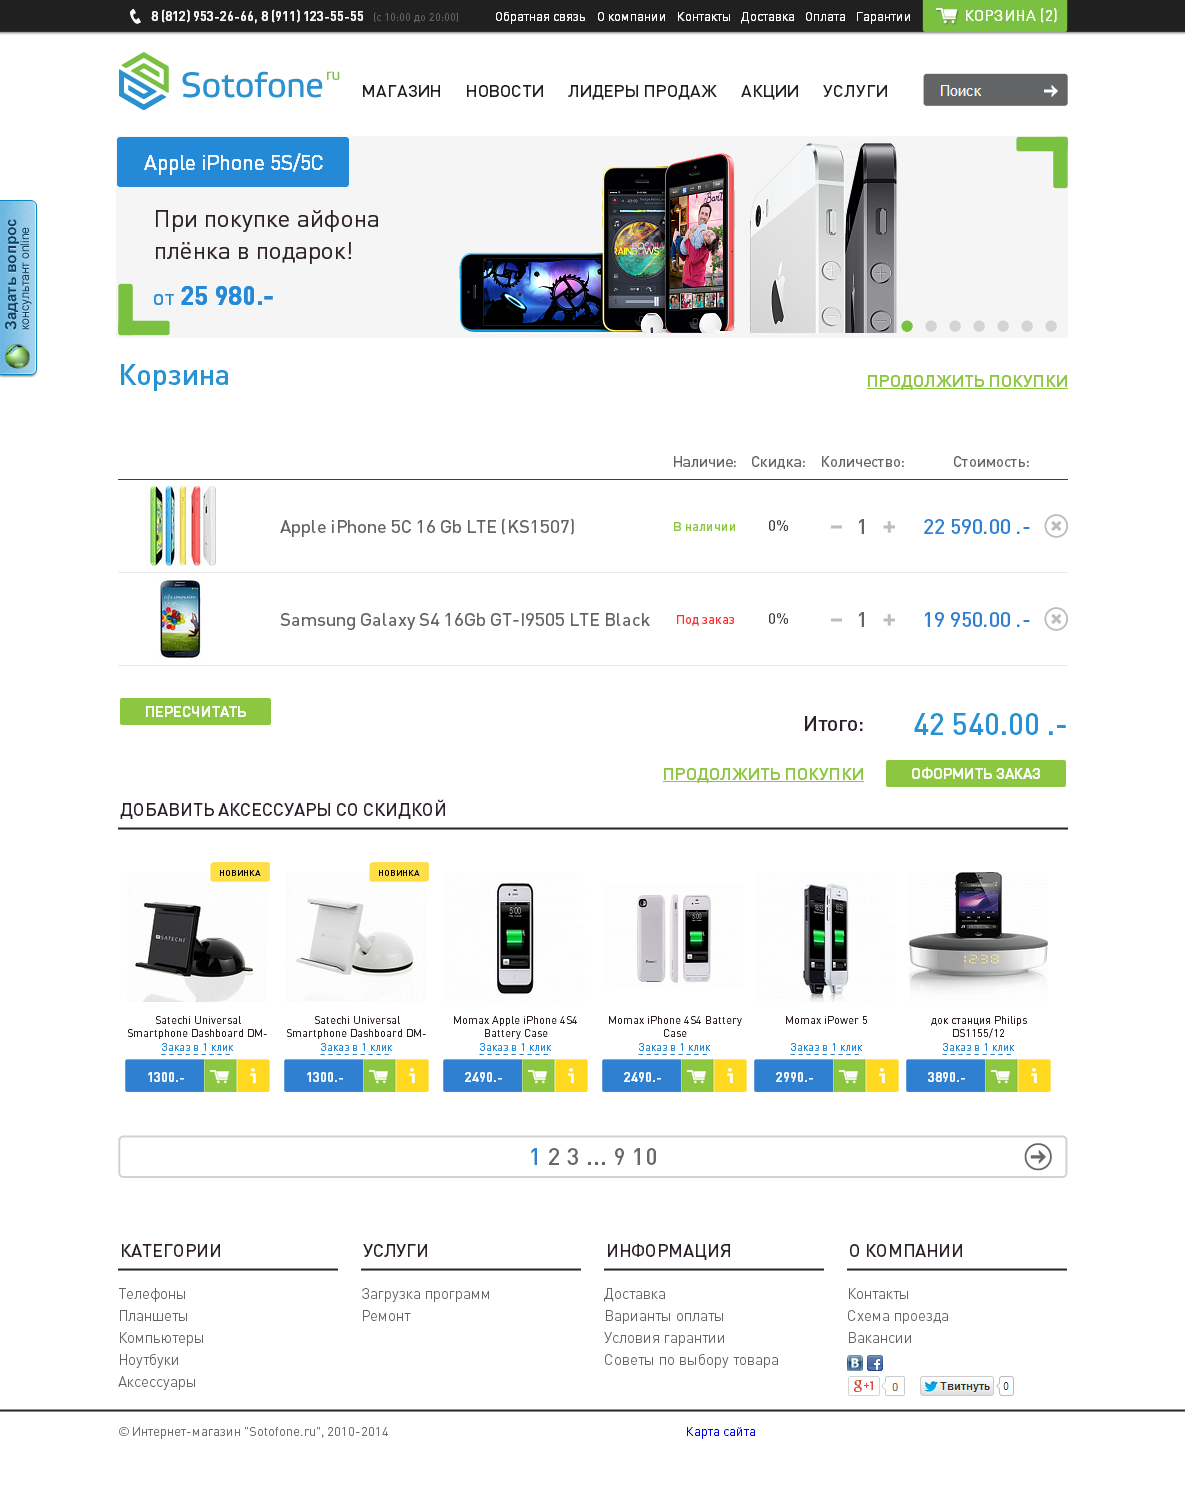 sotofone, интернет-магазин сотовых телефонов